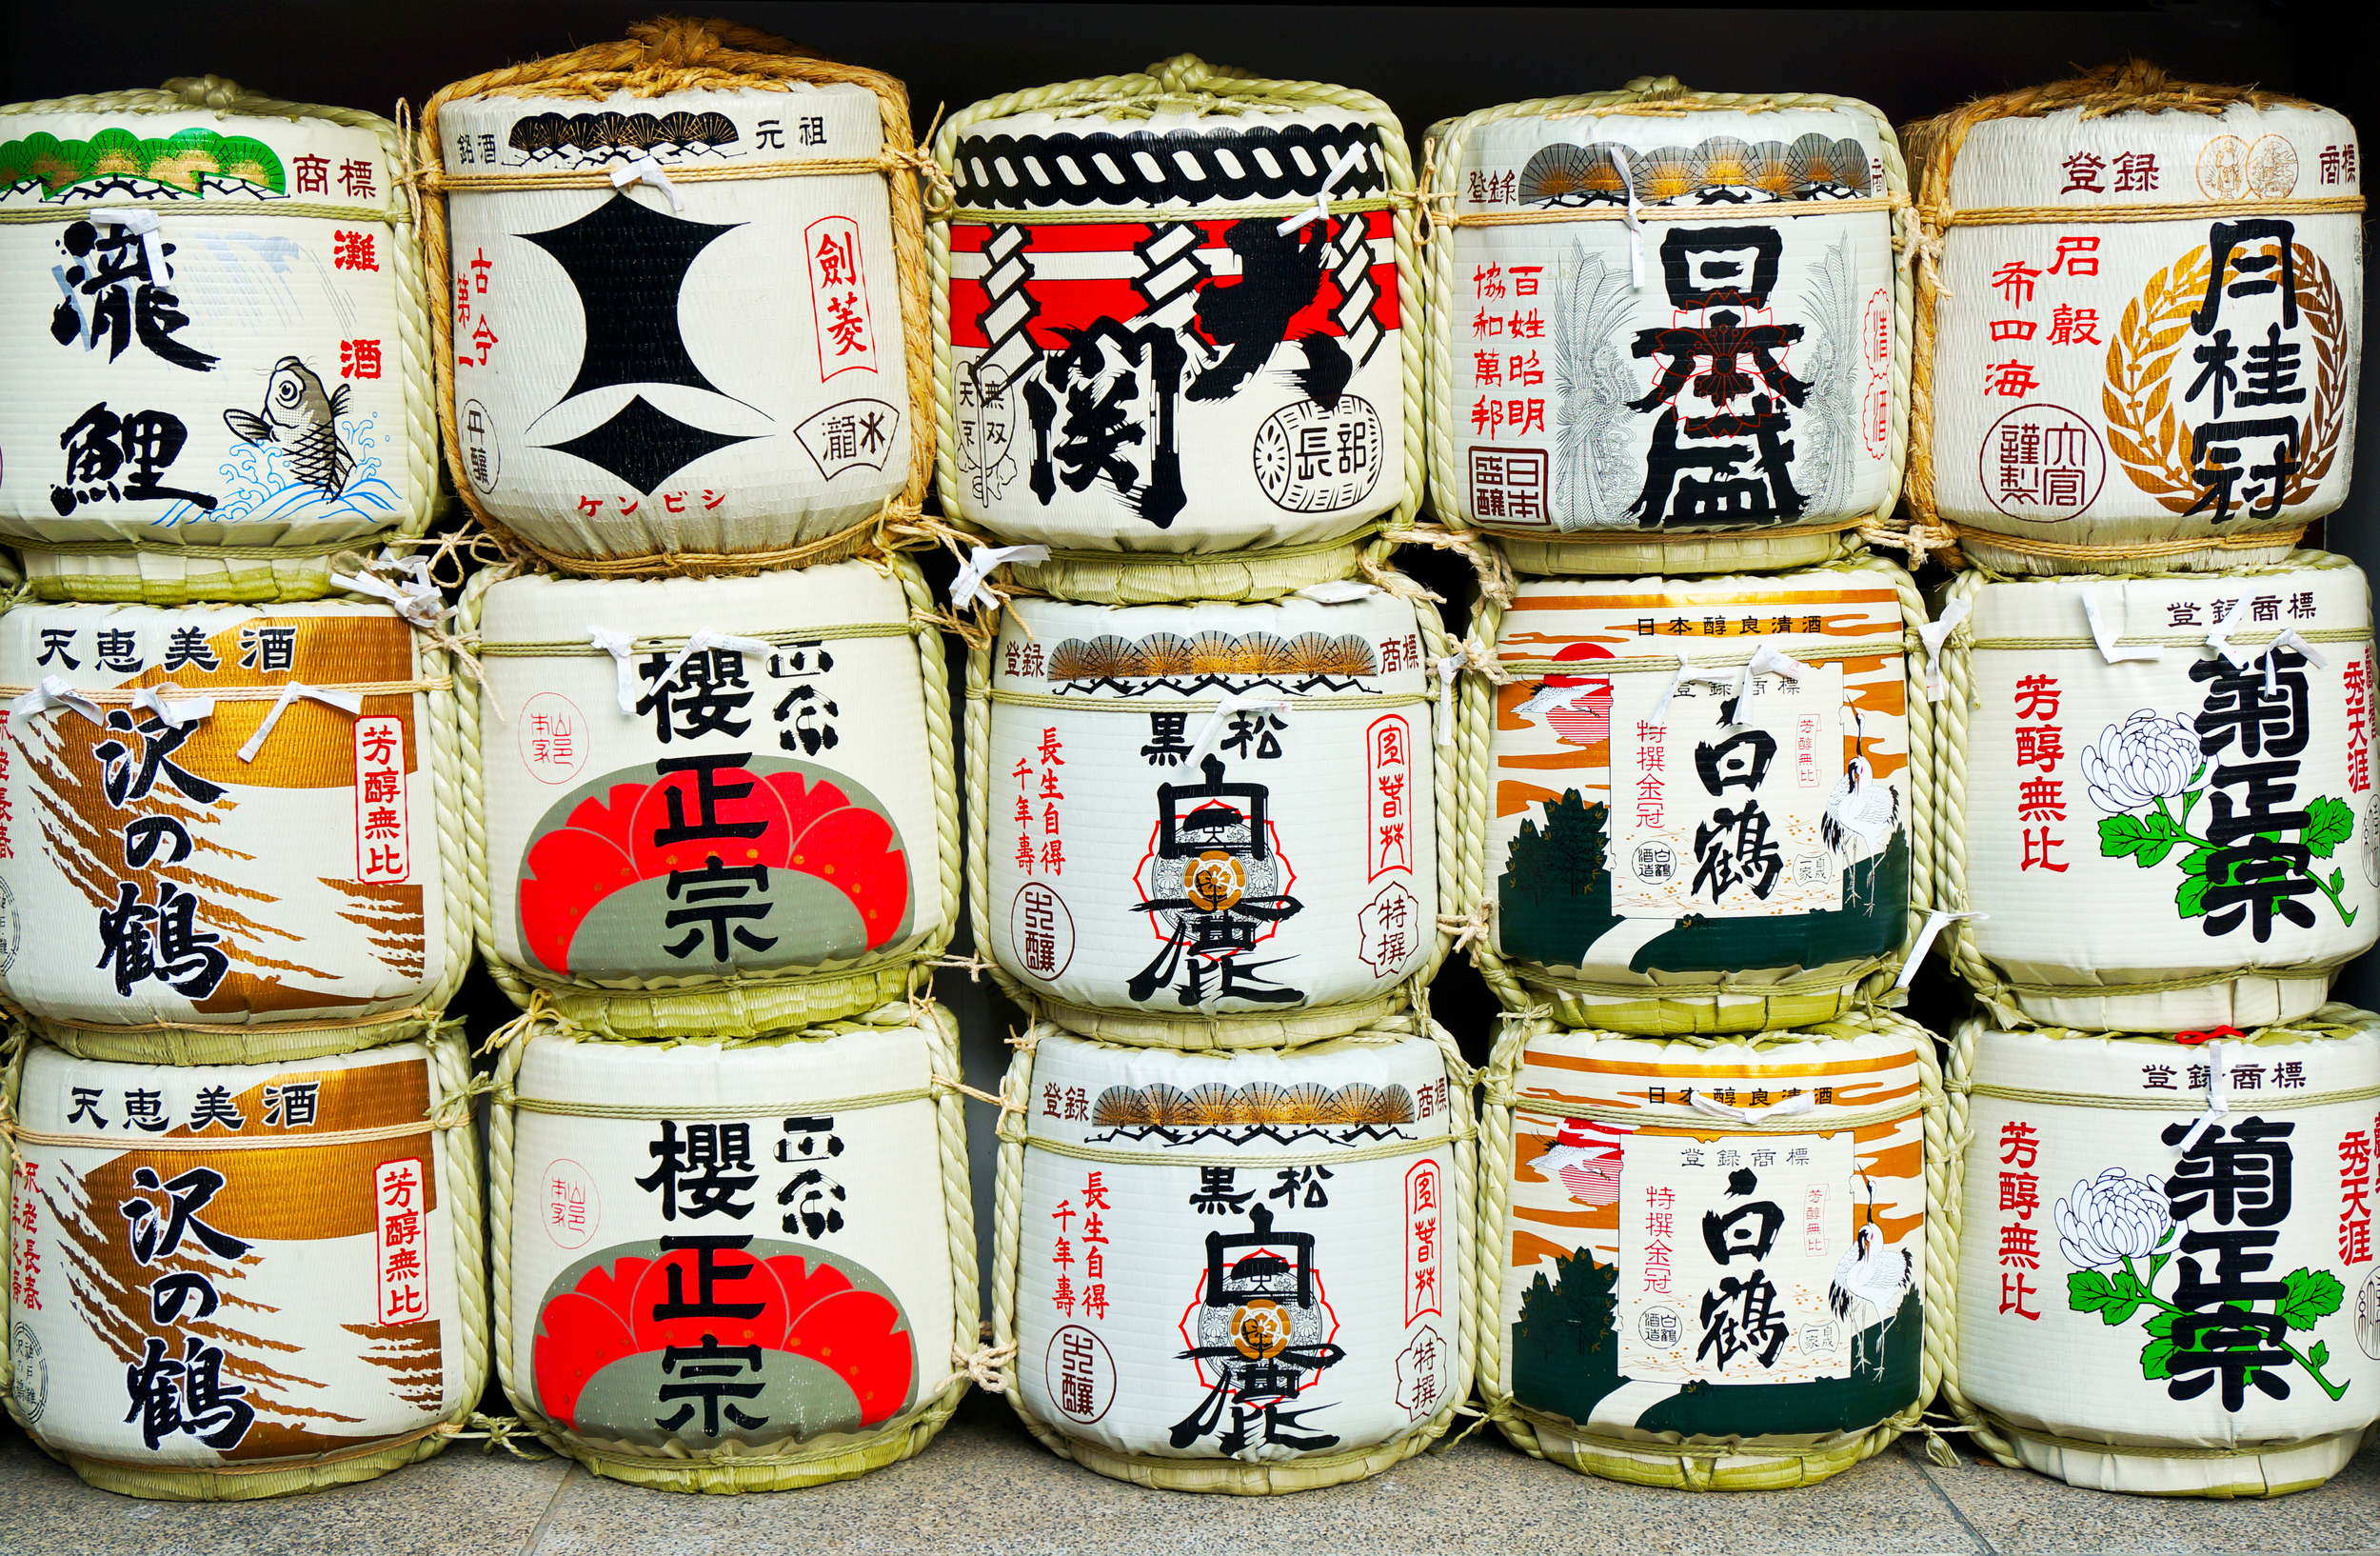 Sake barrels in Kobe, Japan